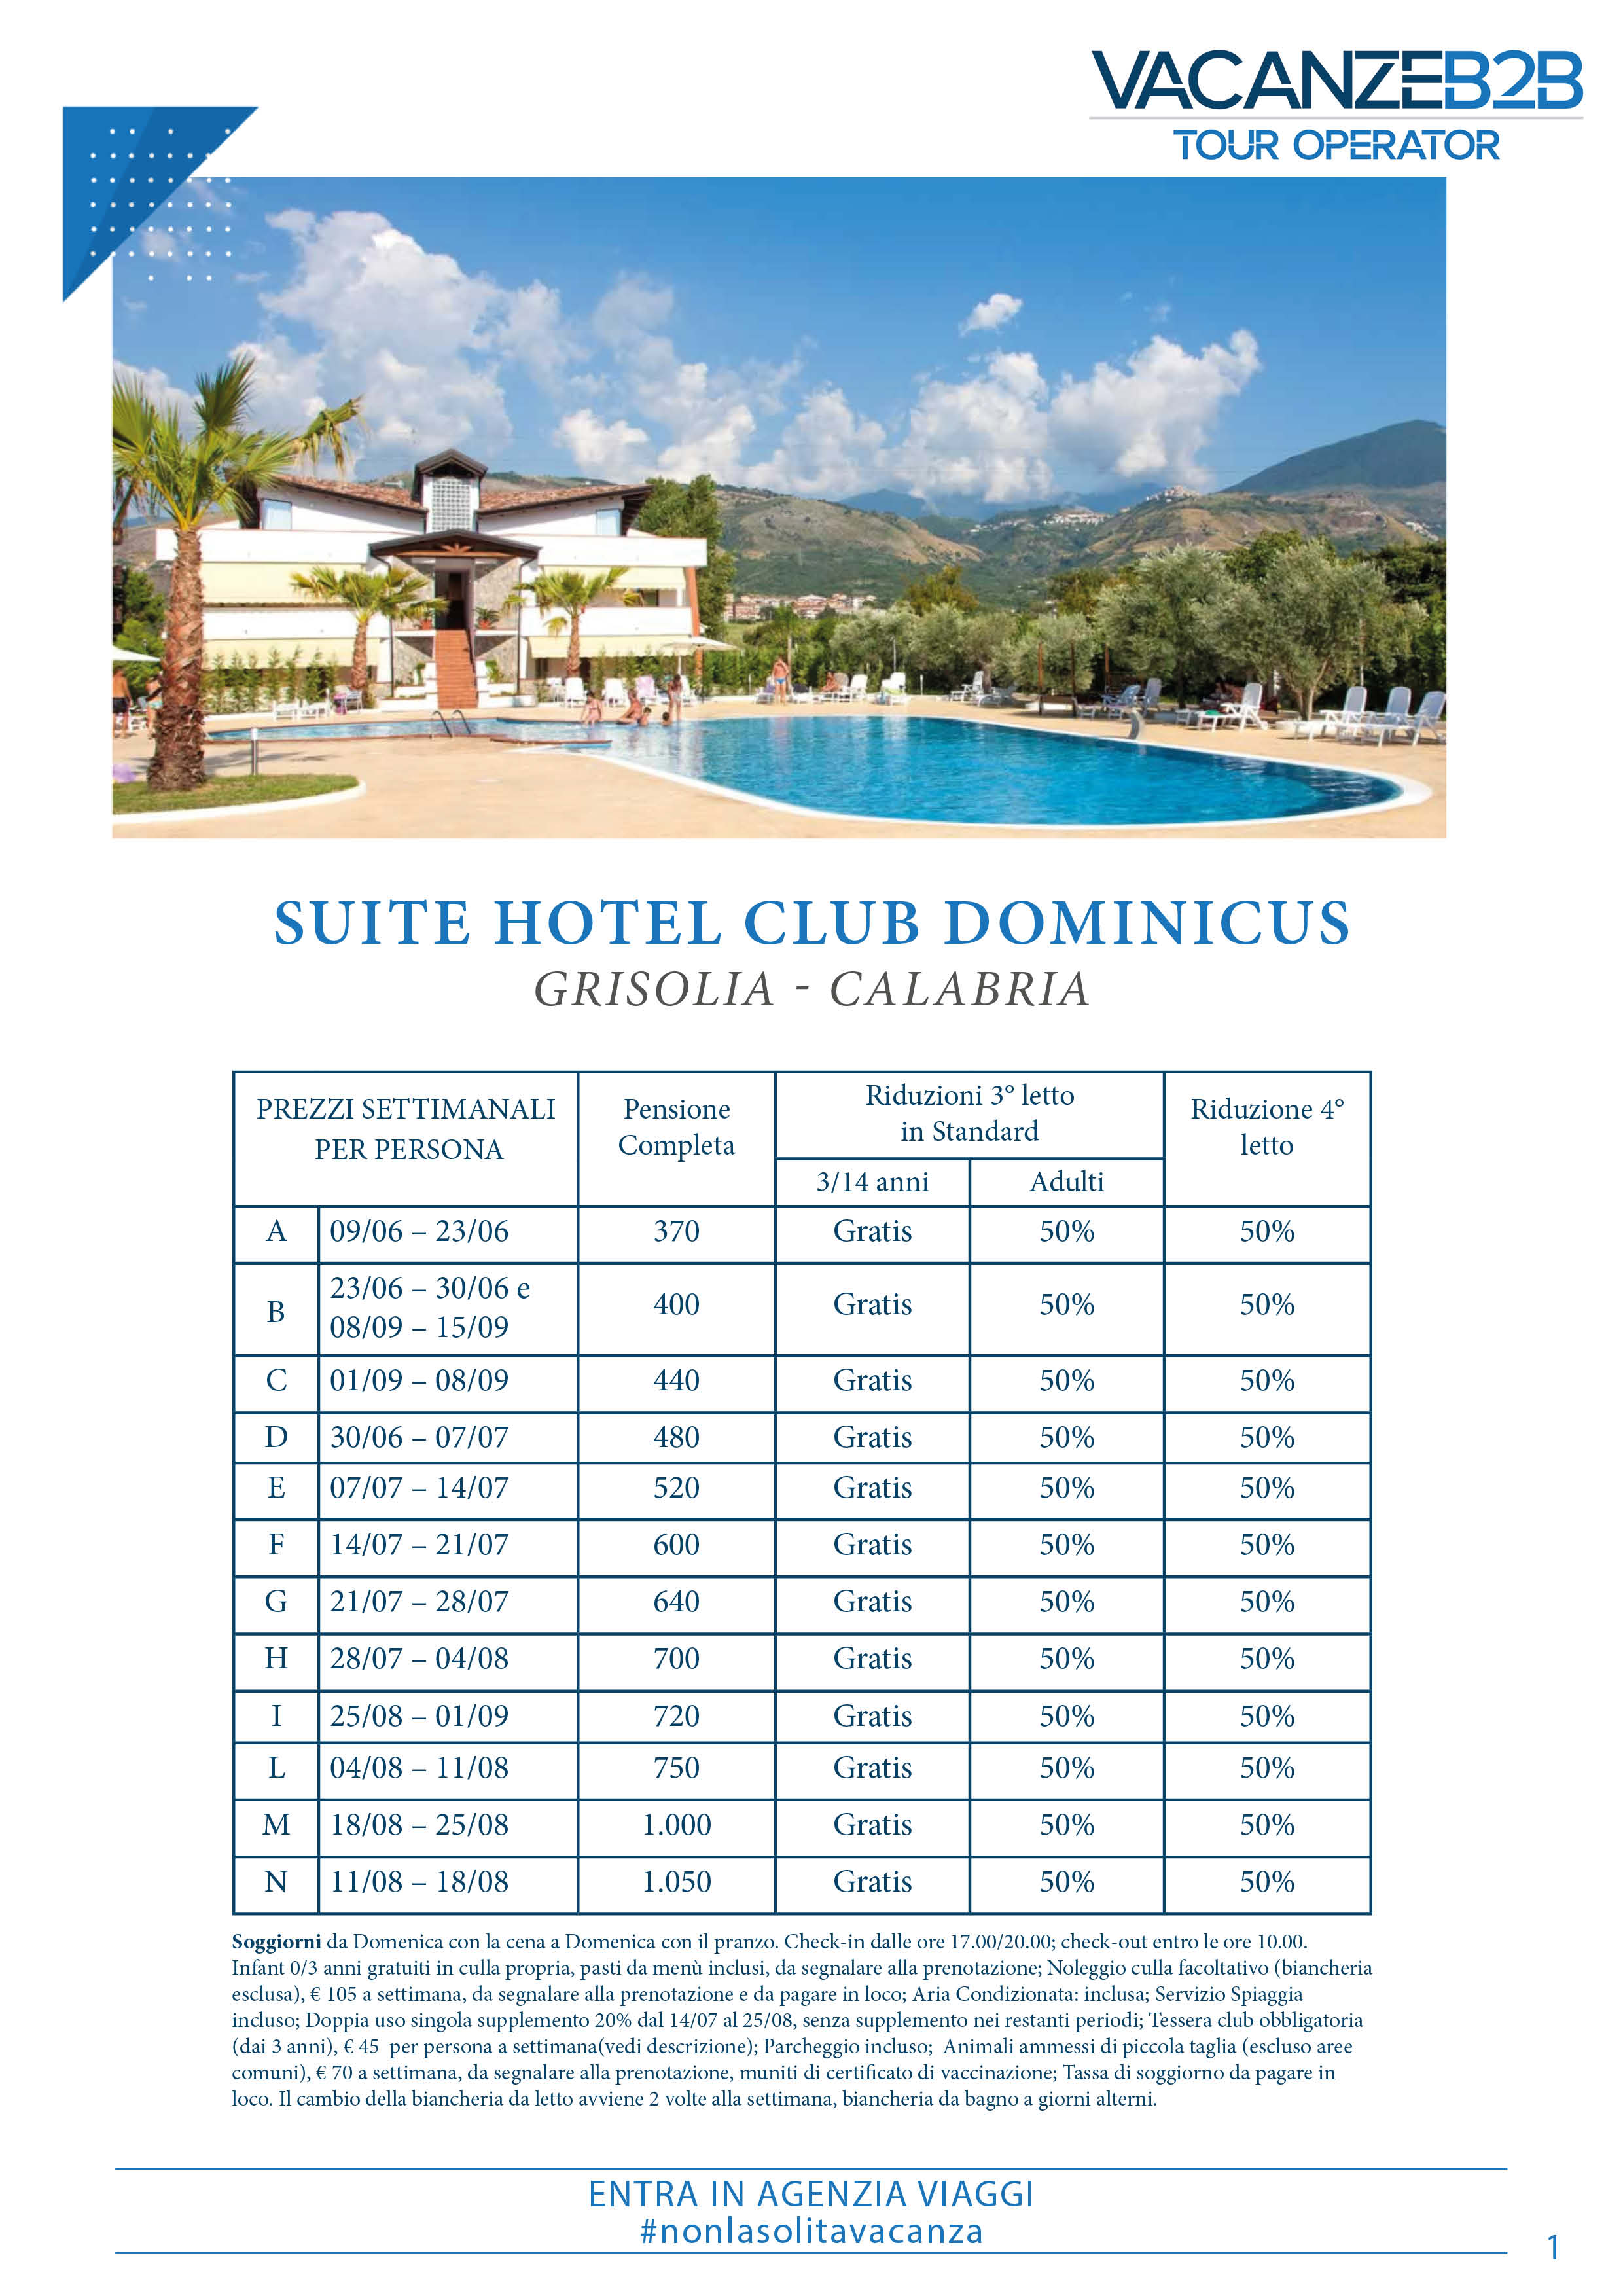 Suite Hotel Dominicus